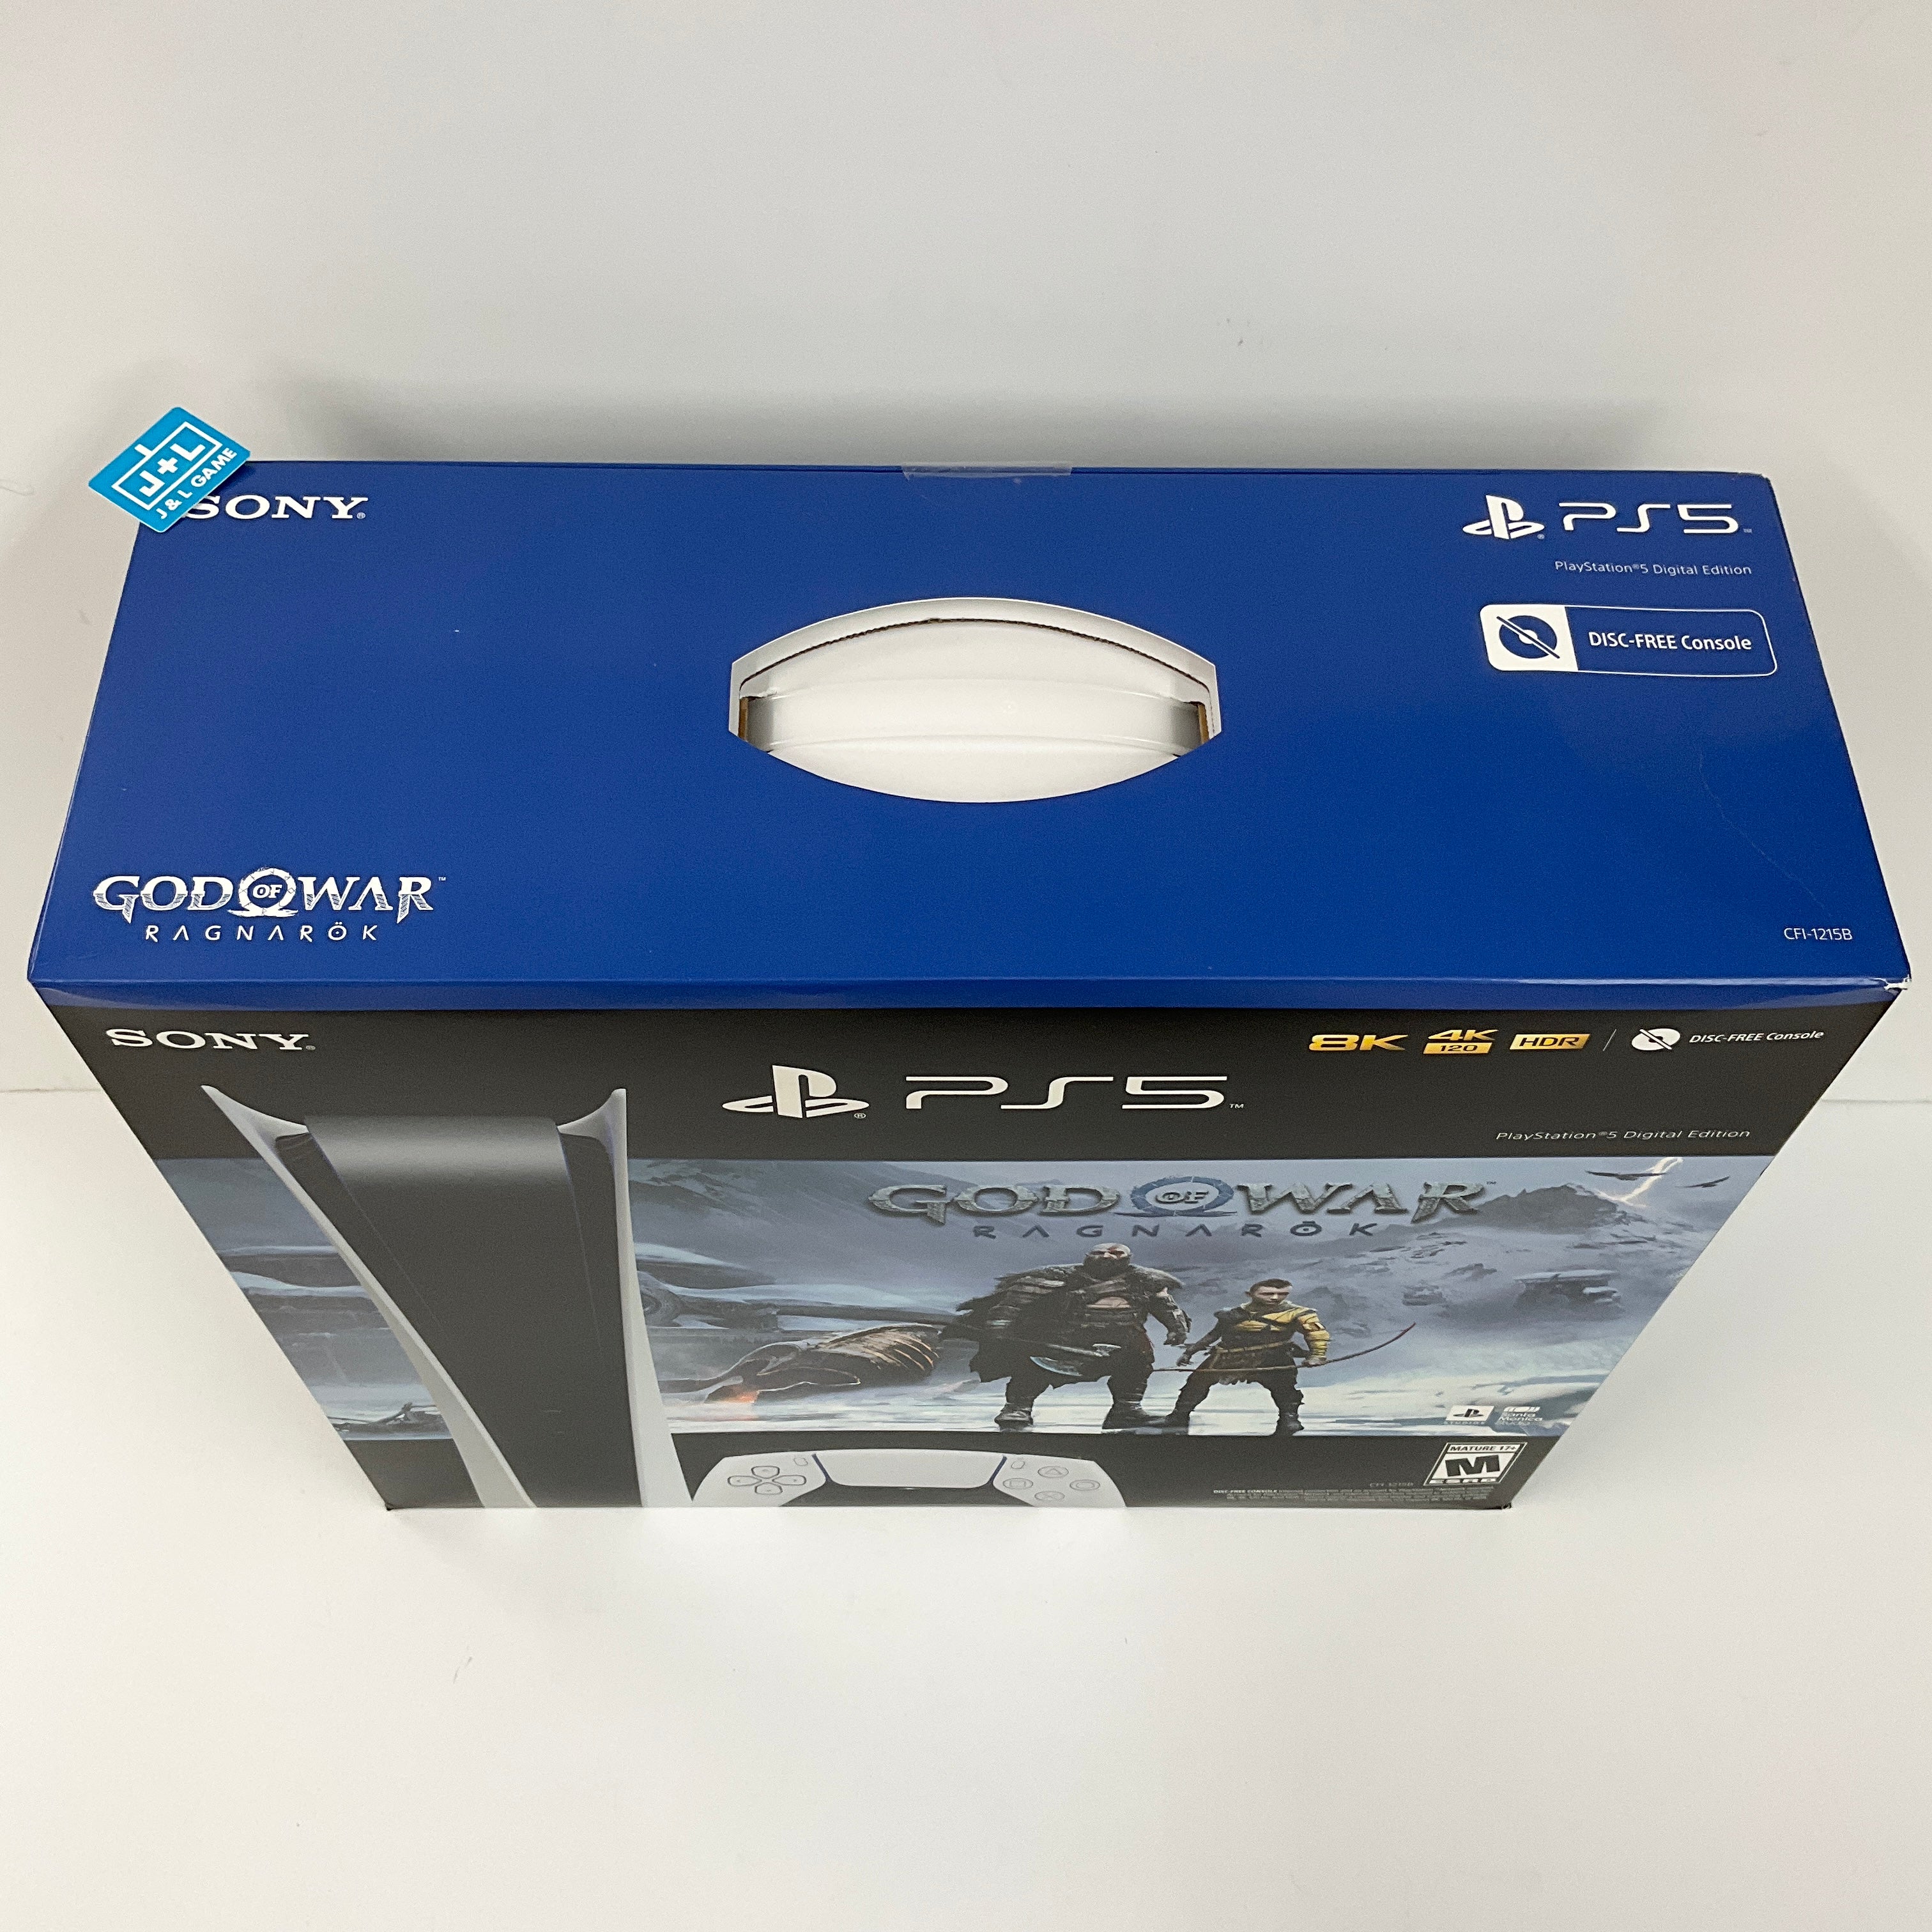 SONY PlayStation 5 Digital Edition Console (God of War Ragnarok Bundle) (Model CFI-1215B) - (PS5) PlayStation 5 Video Games PlayStation   